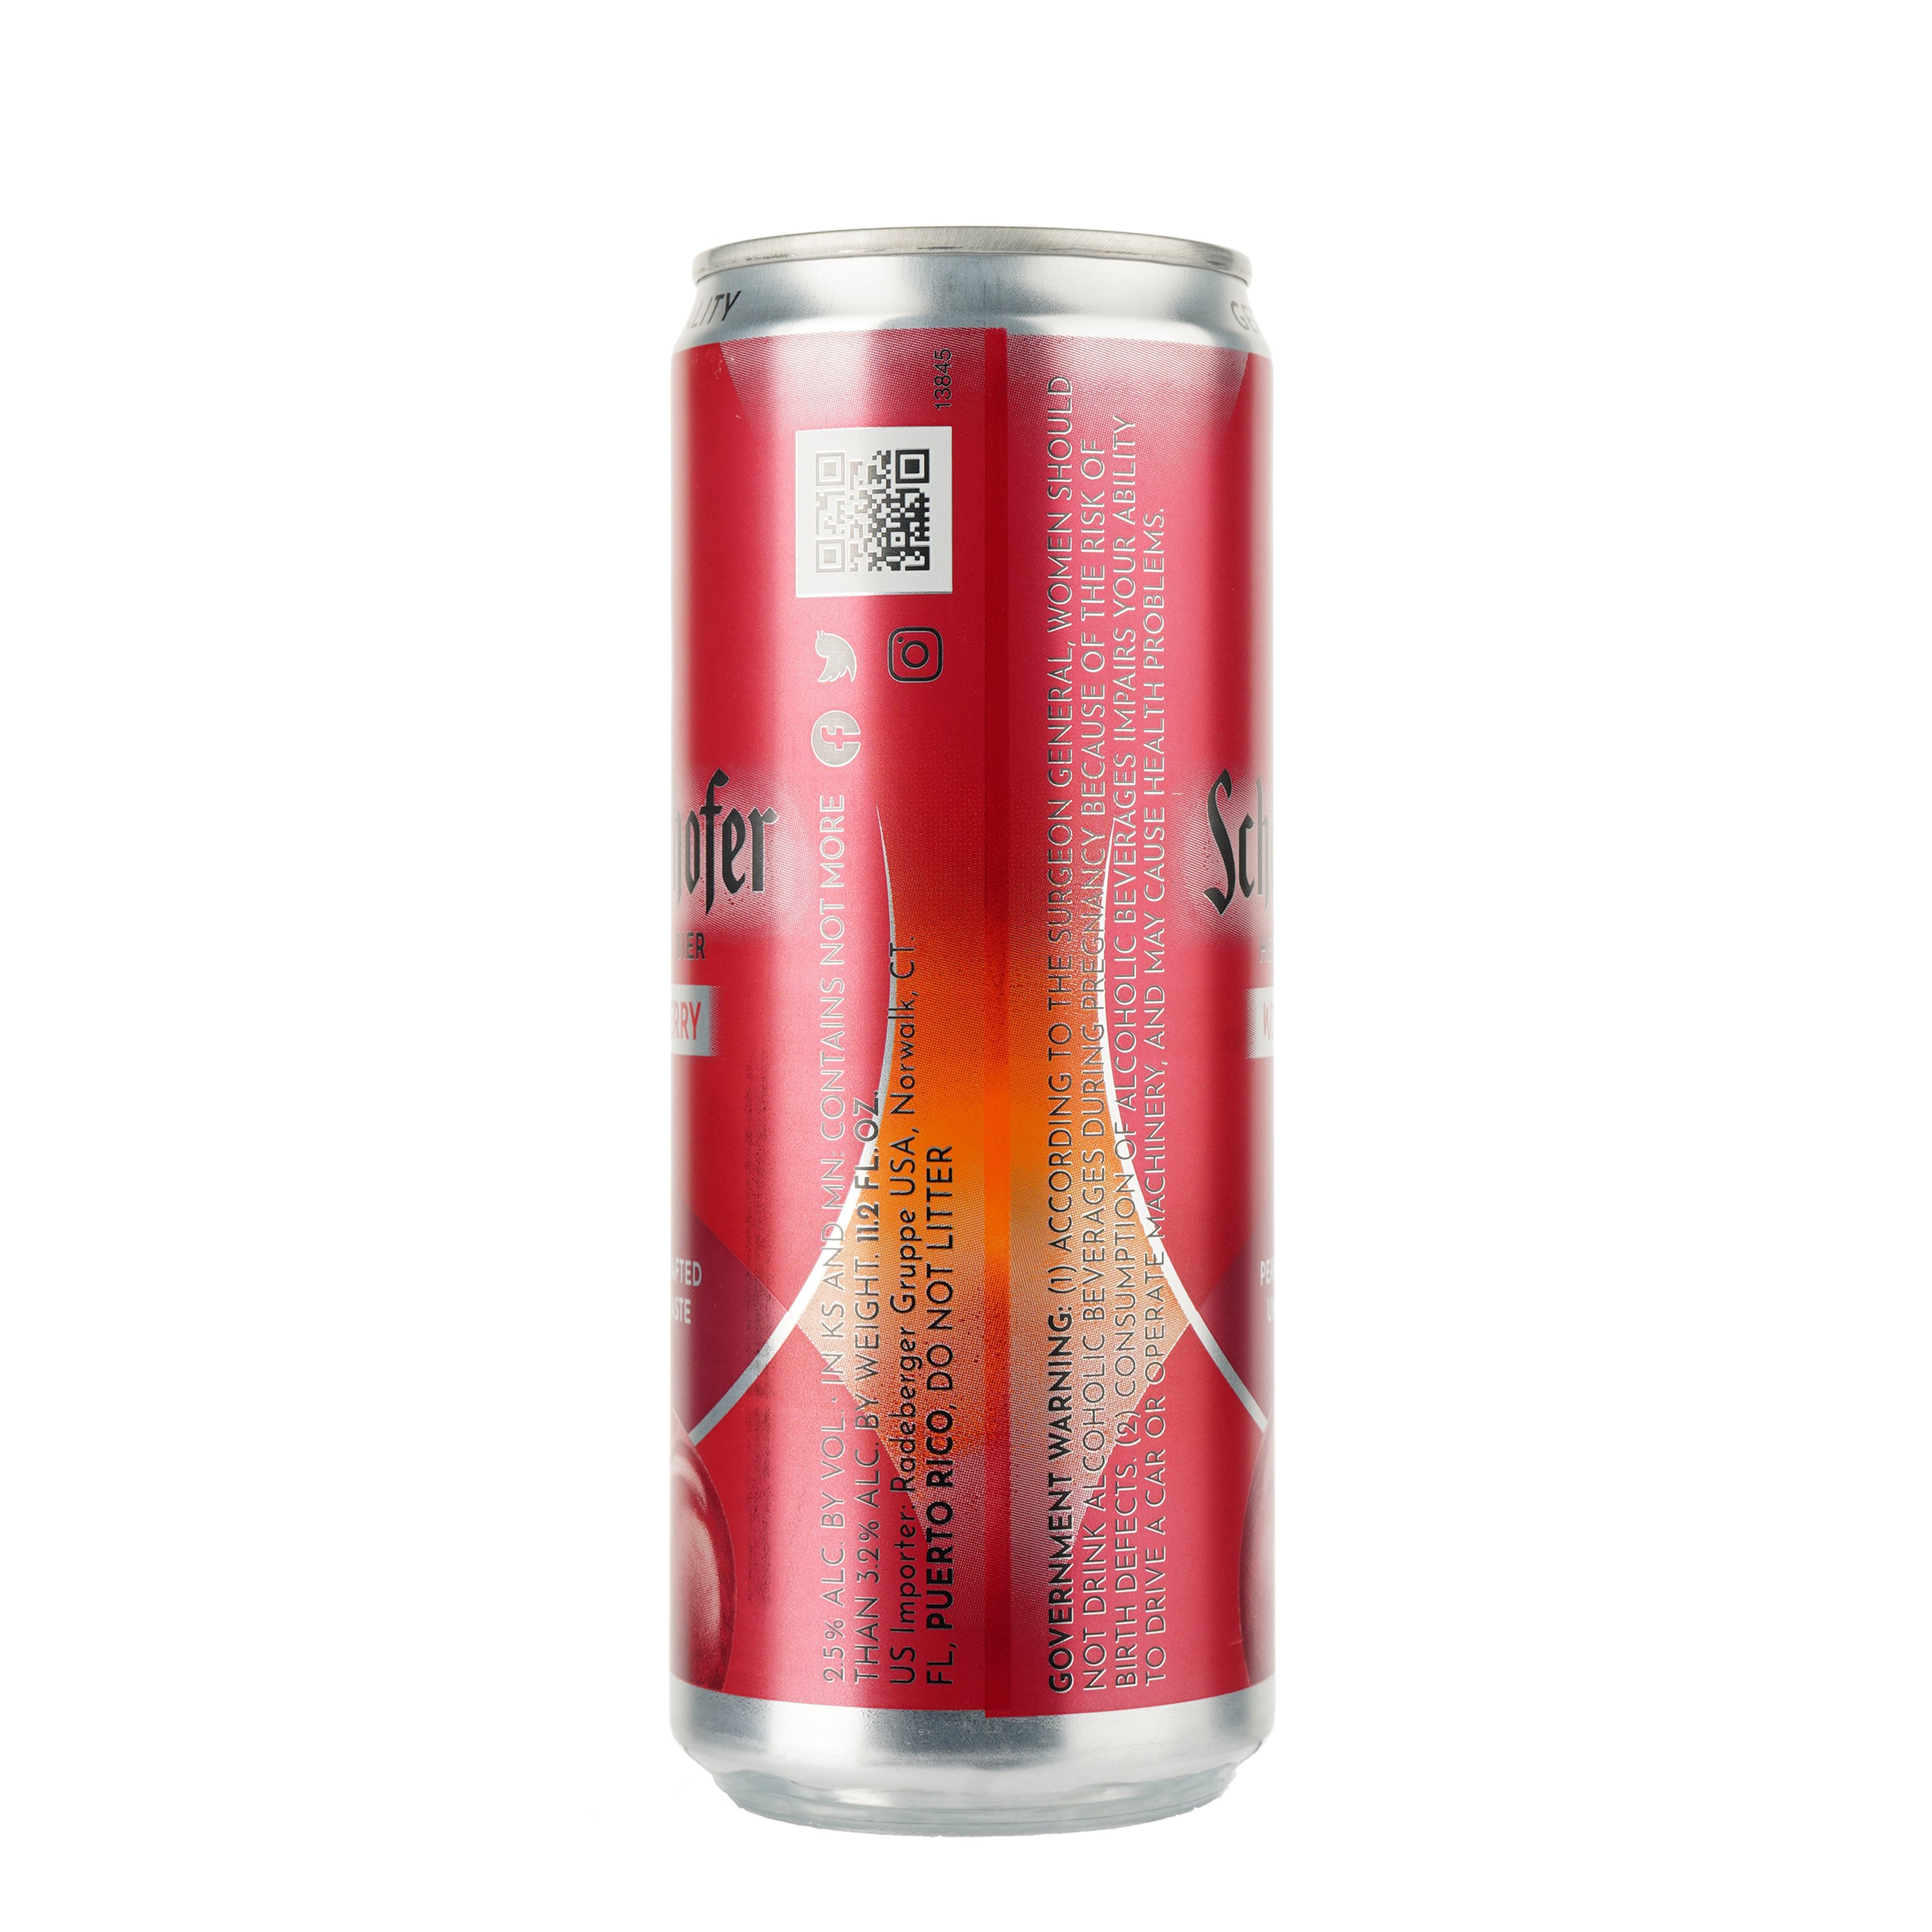 Пиво Schofferhofer Wild Cherry светлое нефильтрованное с соком, 2.5%, ж/б, 0.33 л - фото 2